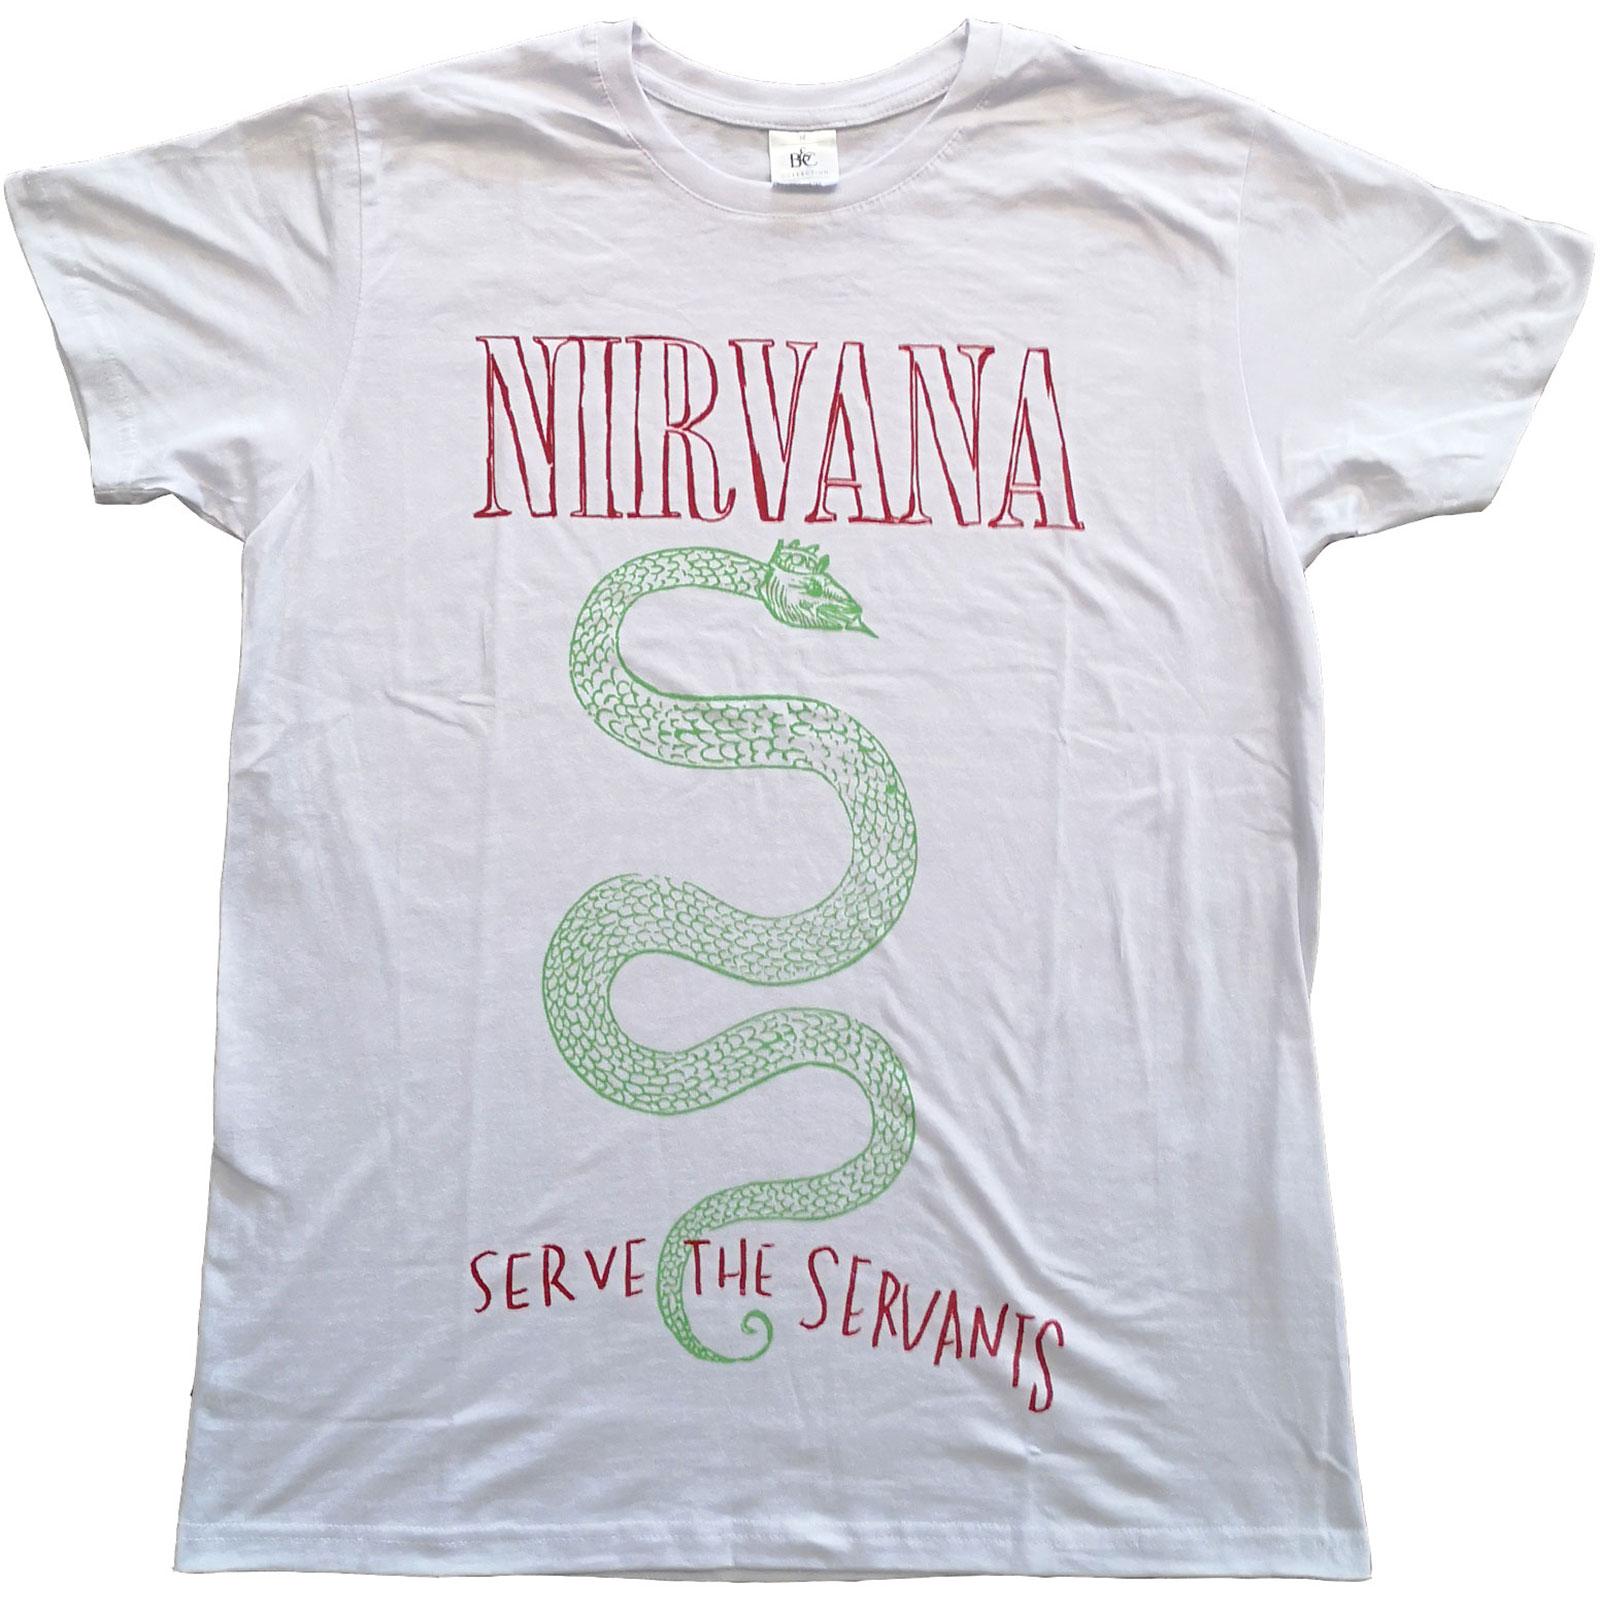 (ニルヴァーナ) Nirvana オフィシャル商品 ユニセックス Serve The Servants Tシャツ コットン 半袖 トップス 